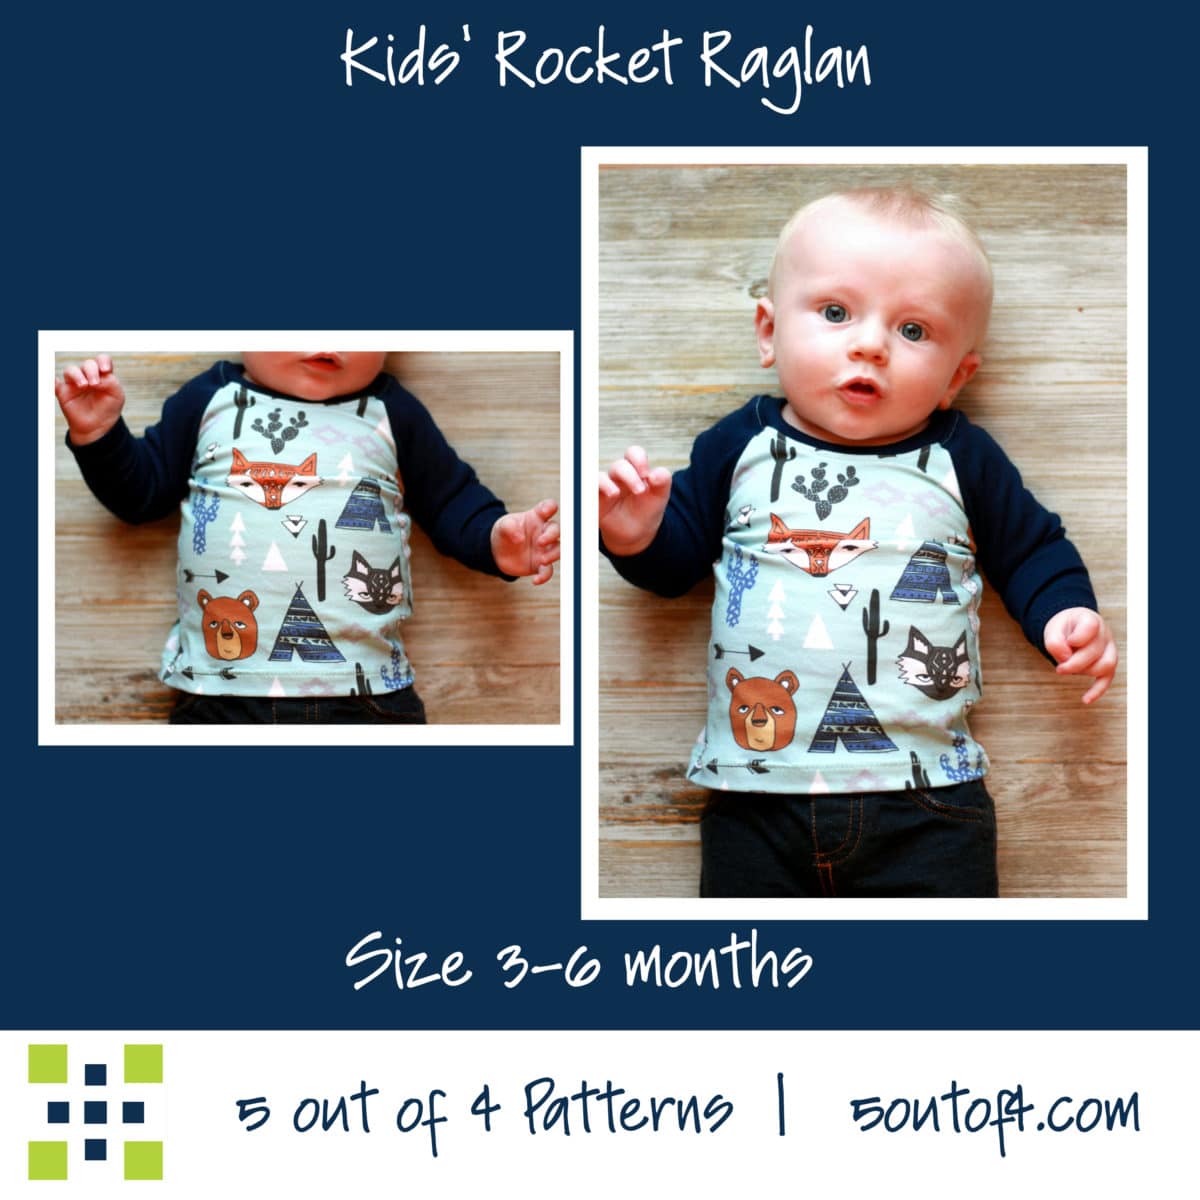 Kids' Rocket Raglan - 5 out of 4 Patterns